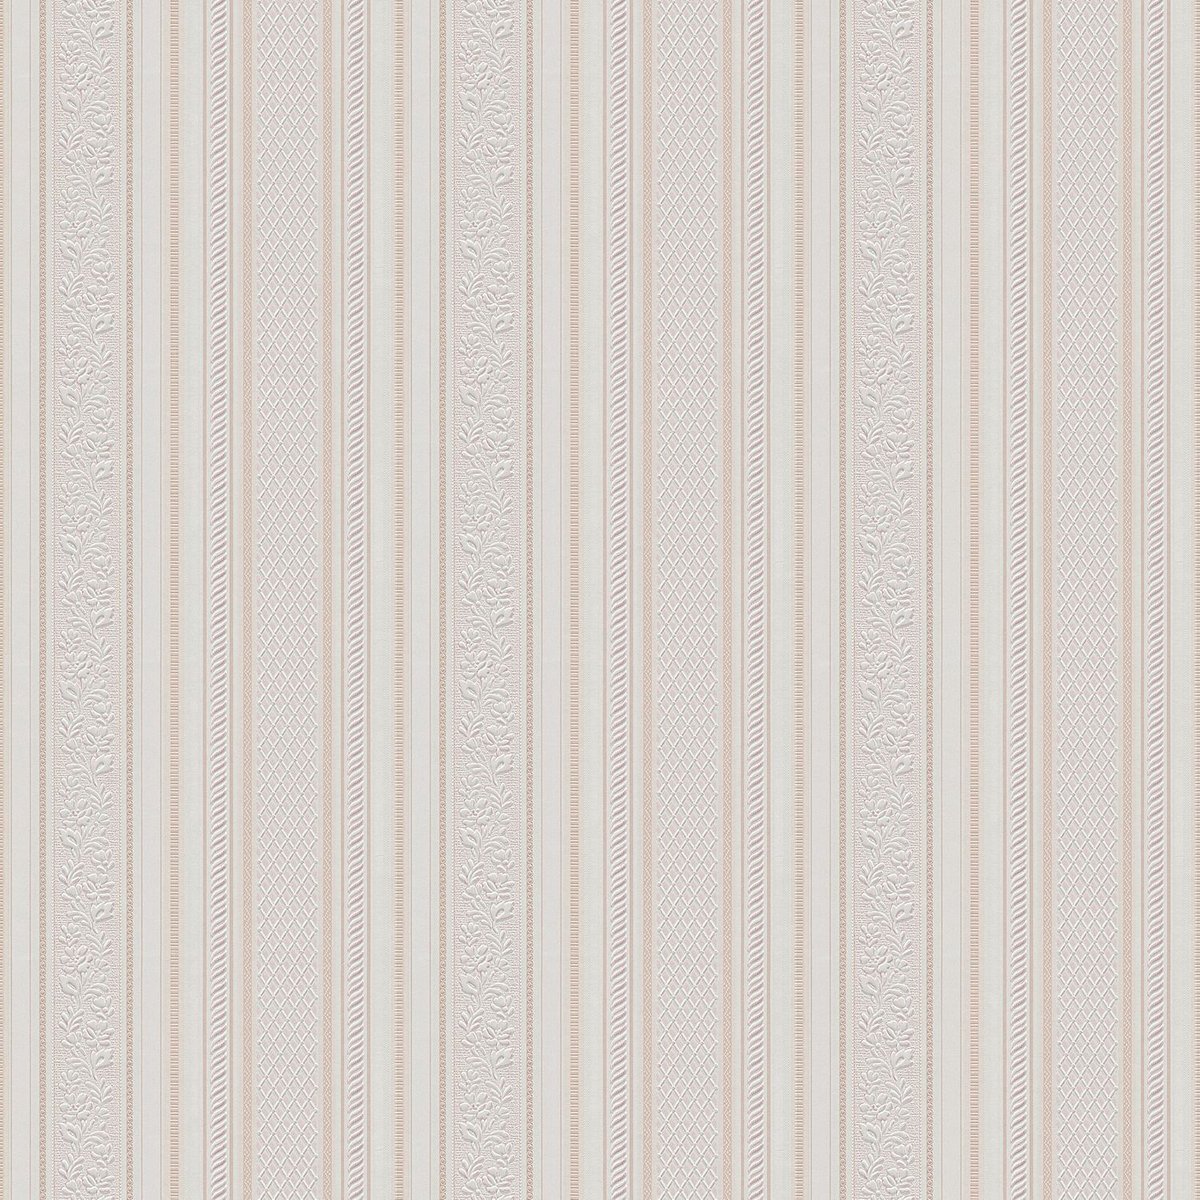 Strepen behang Profhome 765673-GU papier behang licht gestructureerd met strepen mat crème beige wit 5,33 m2 - Profhome